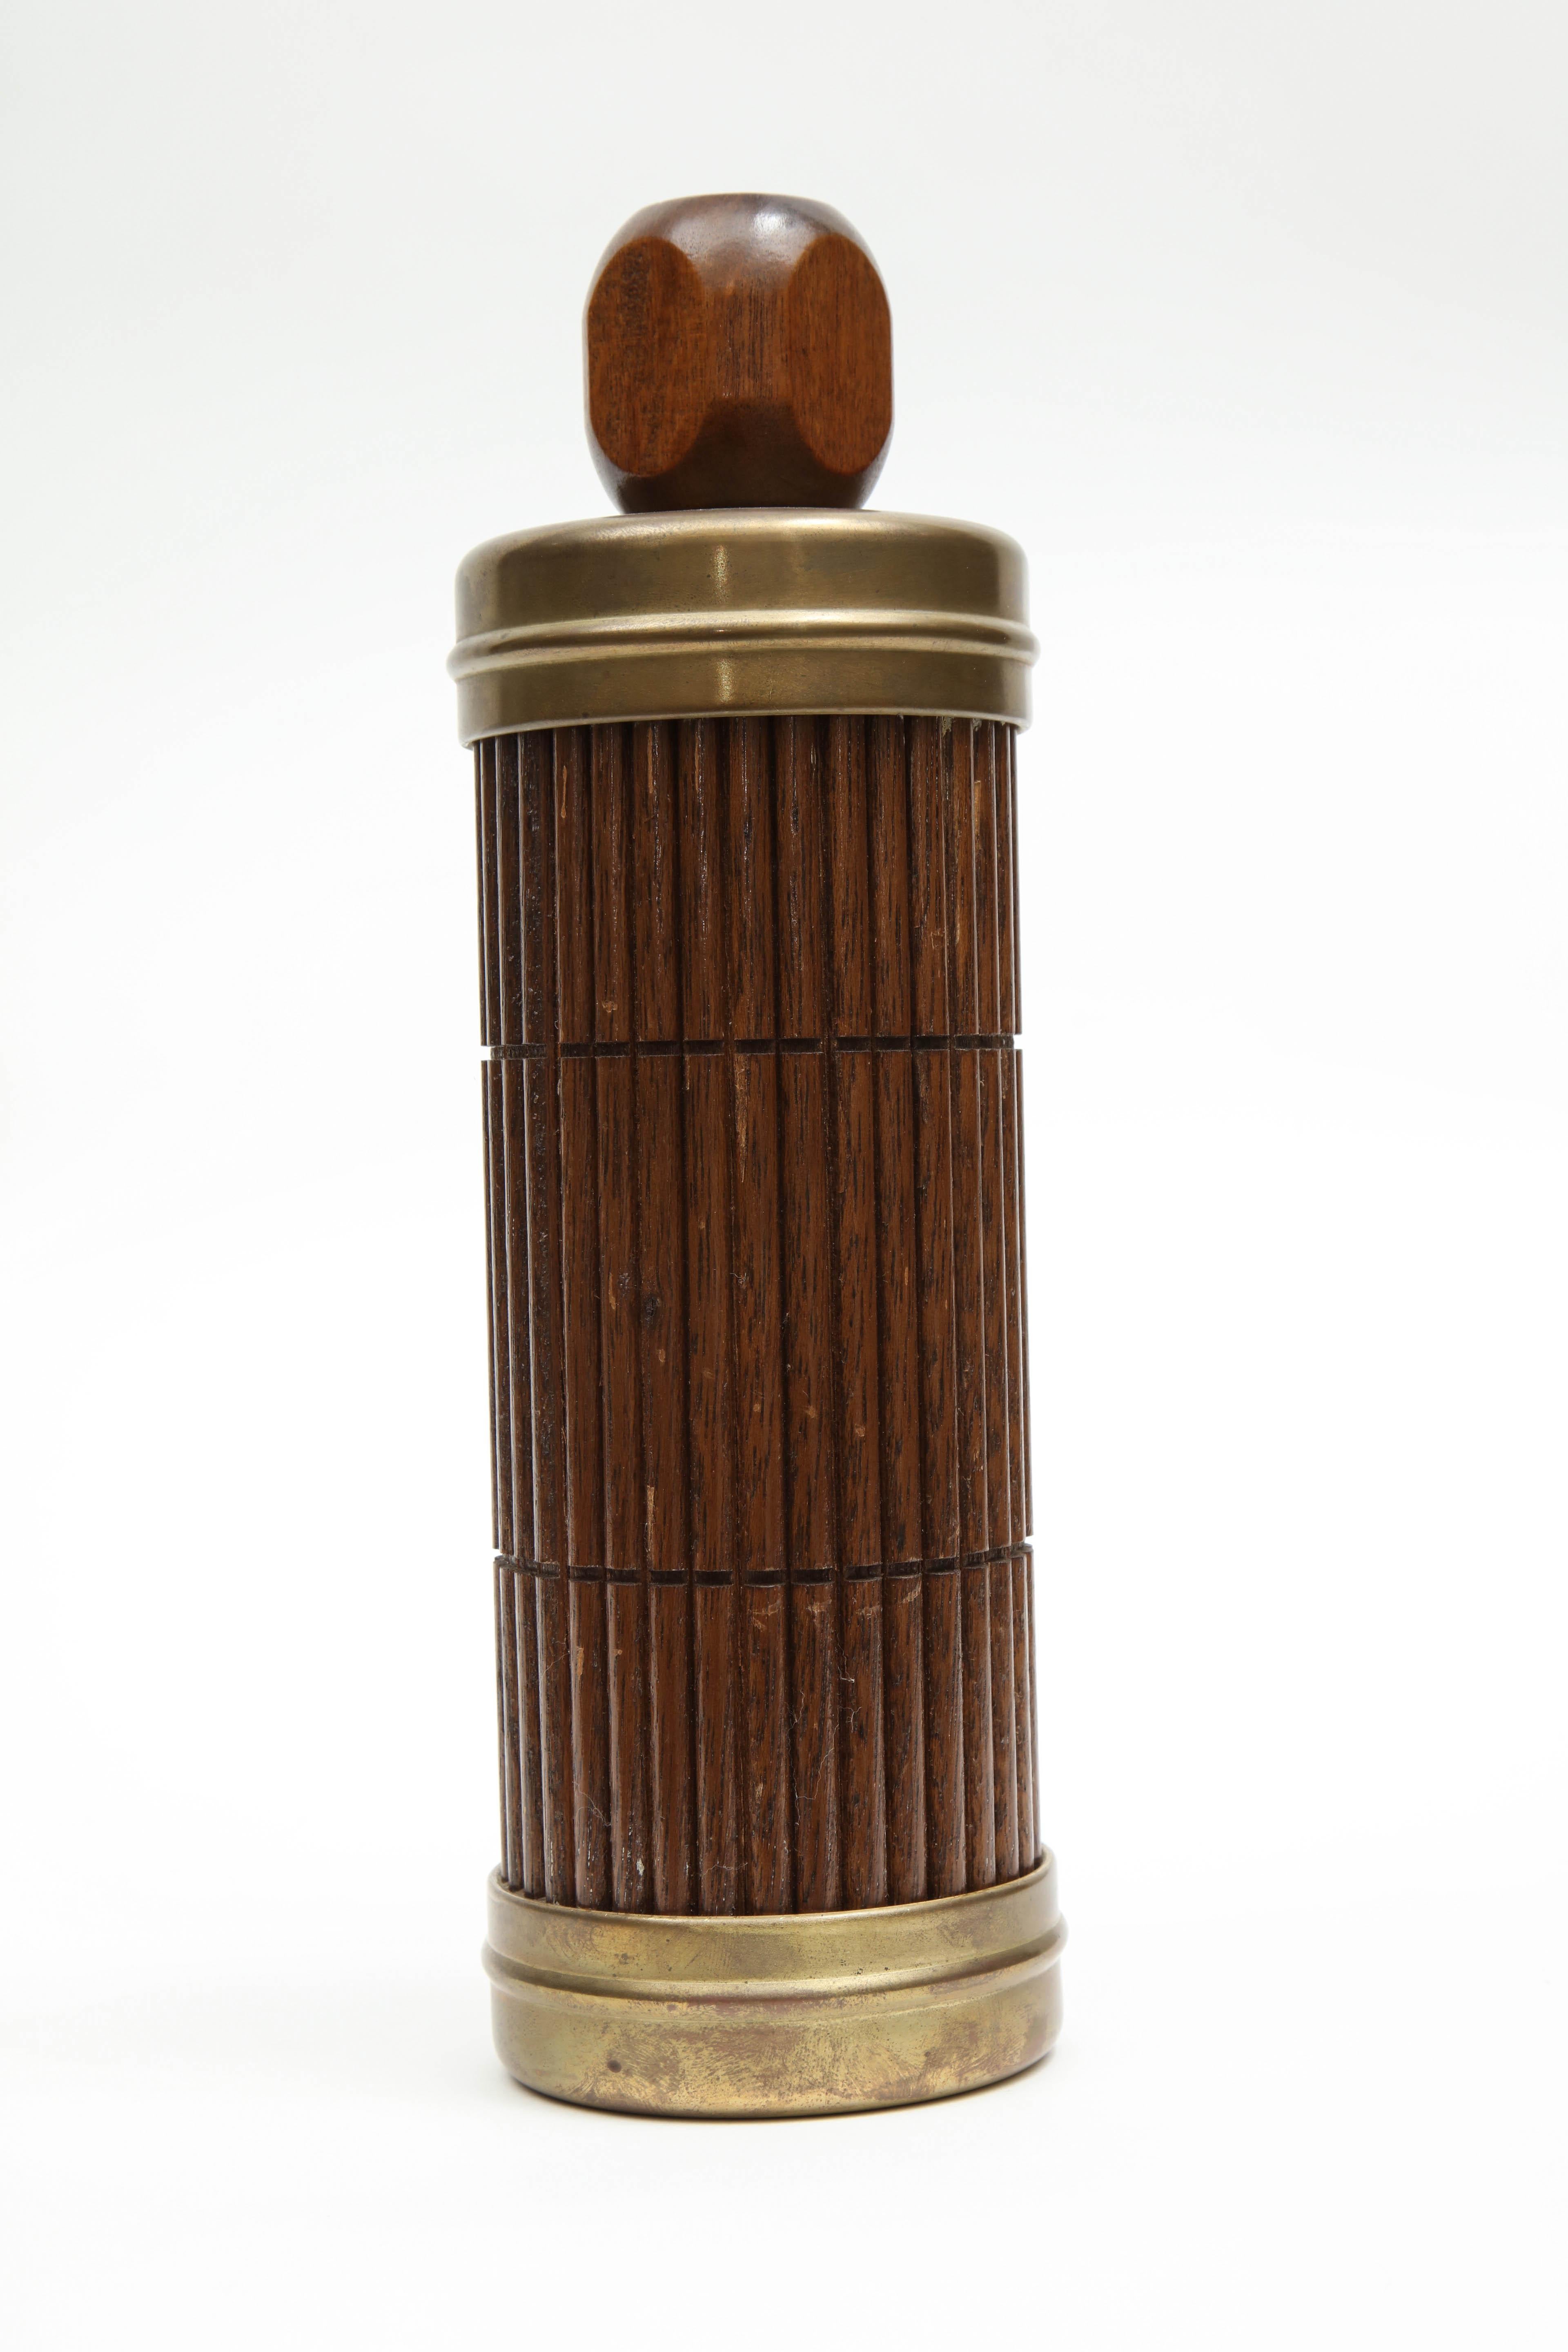 Un thermomètre datant d'environ 1950, au Japon. Fabriqué en bambou et détails en laiton. Design midcentury.